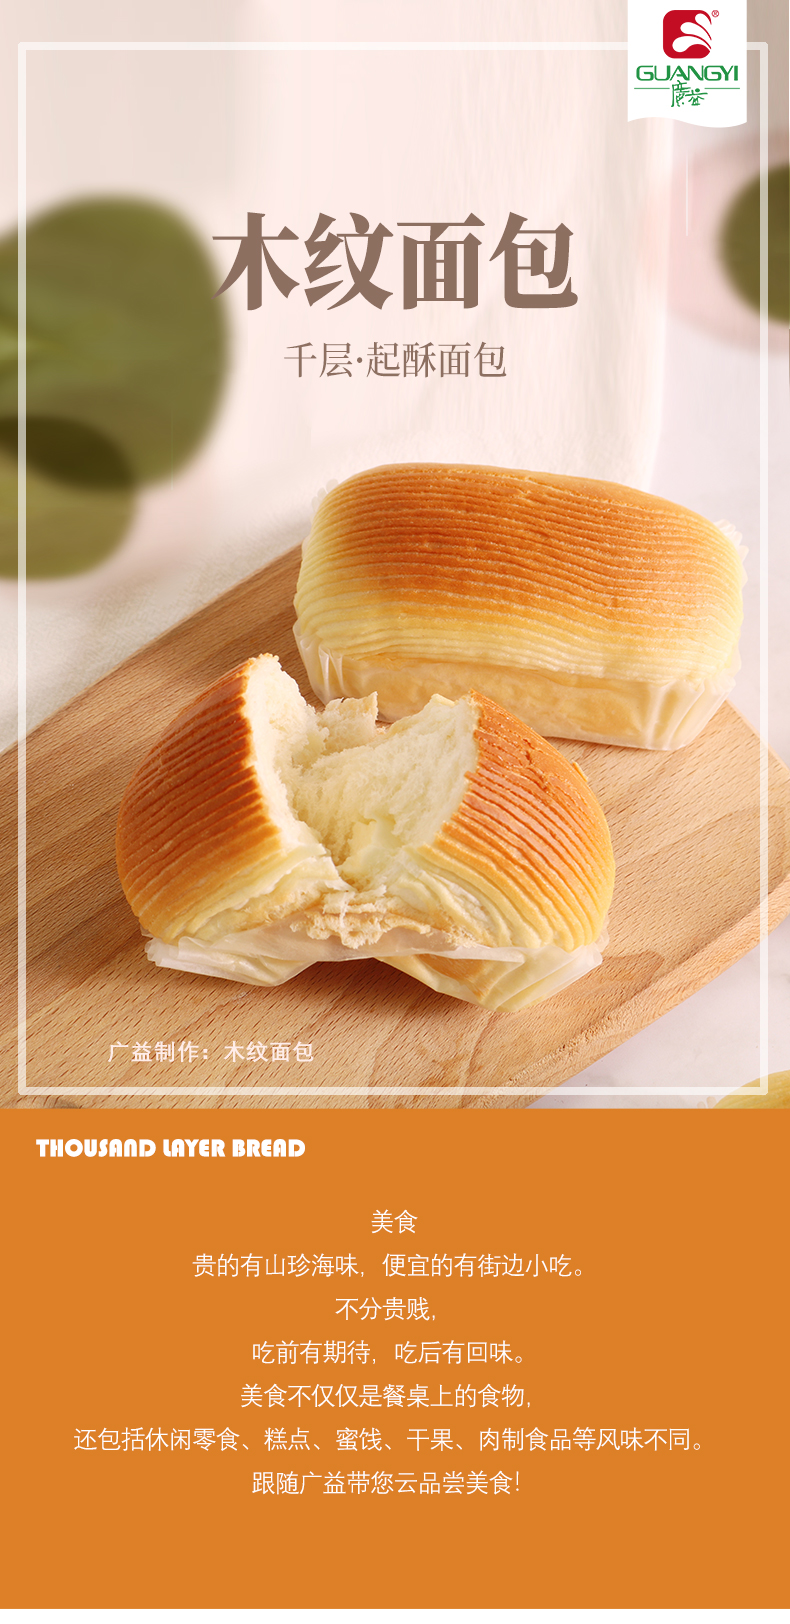 開酥面包(木紋面包)長圖_01.jpg